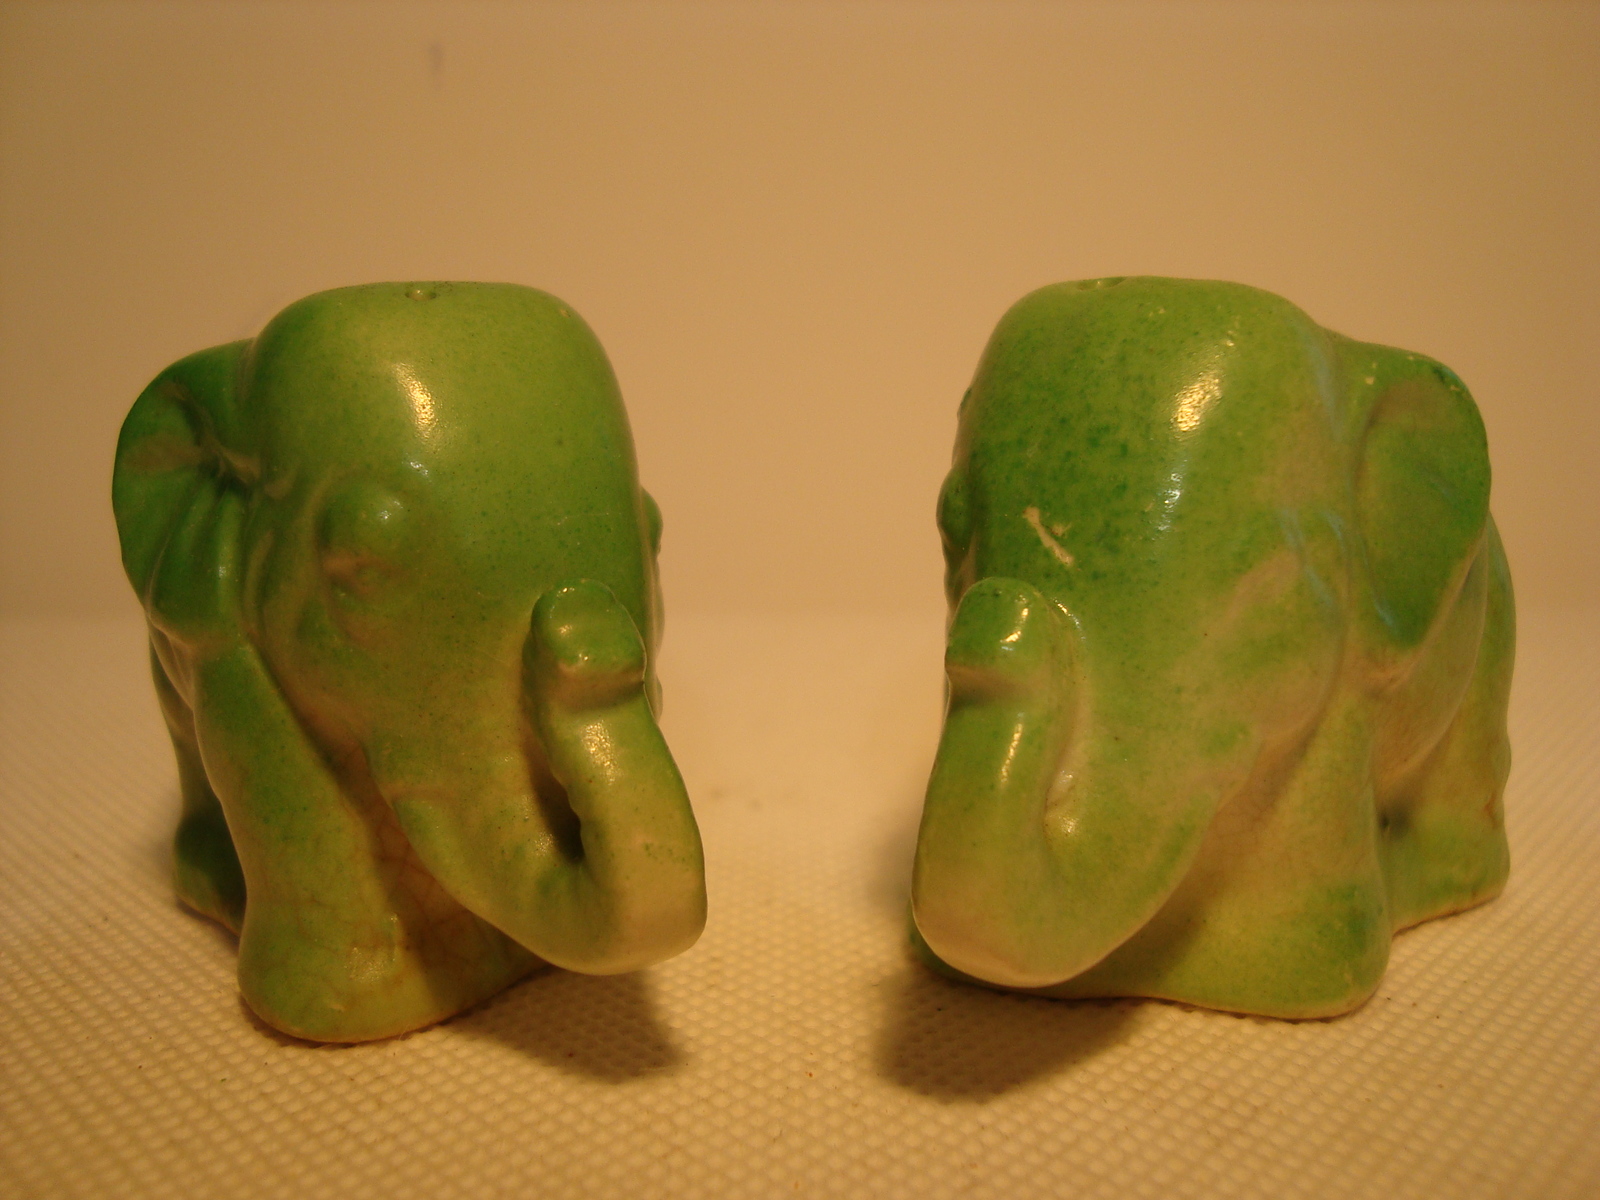 Primary image for Vintage, Japan green porcelain elephant shape salt & pepper shaker set.